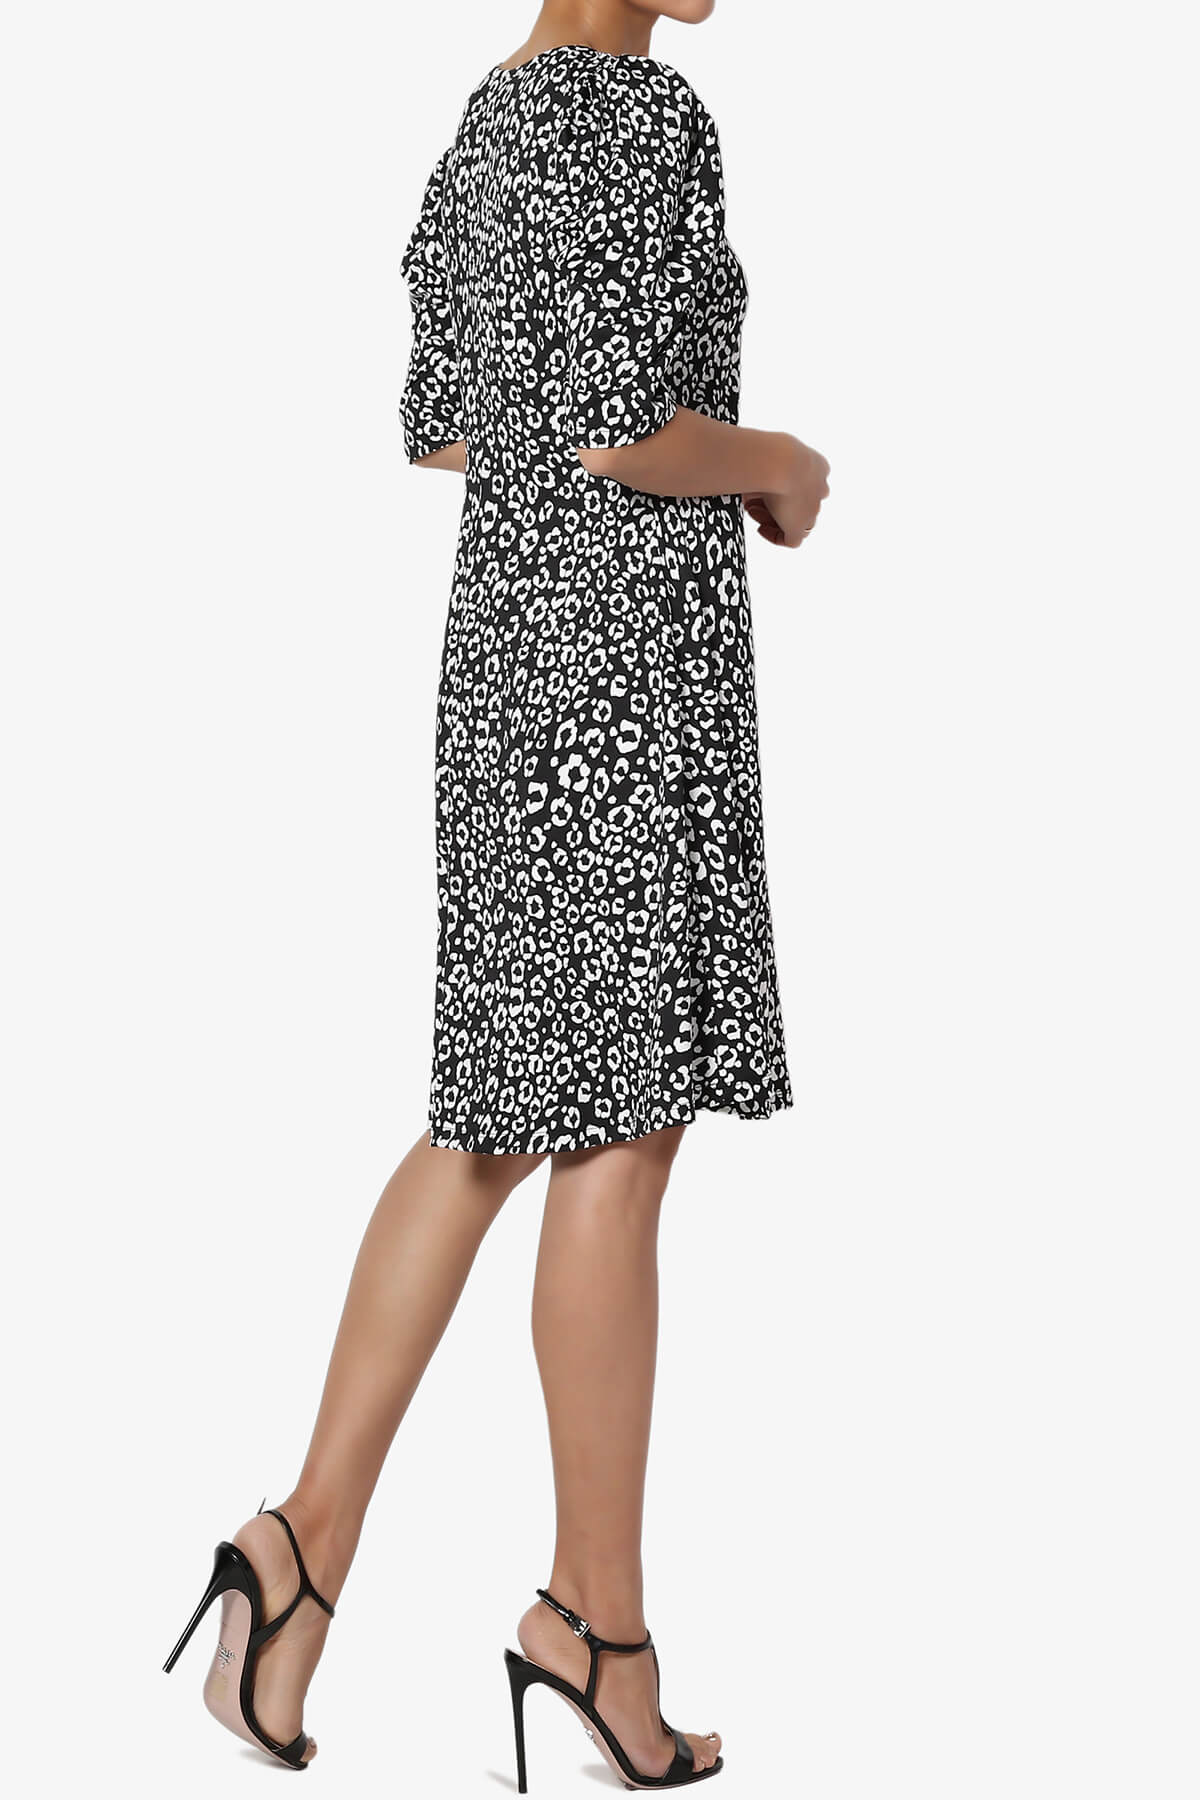 Jimmy Puff Sleeve Leopard Print Dress BLACK_4